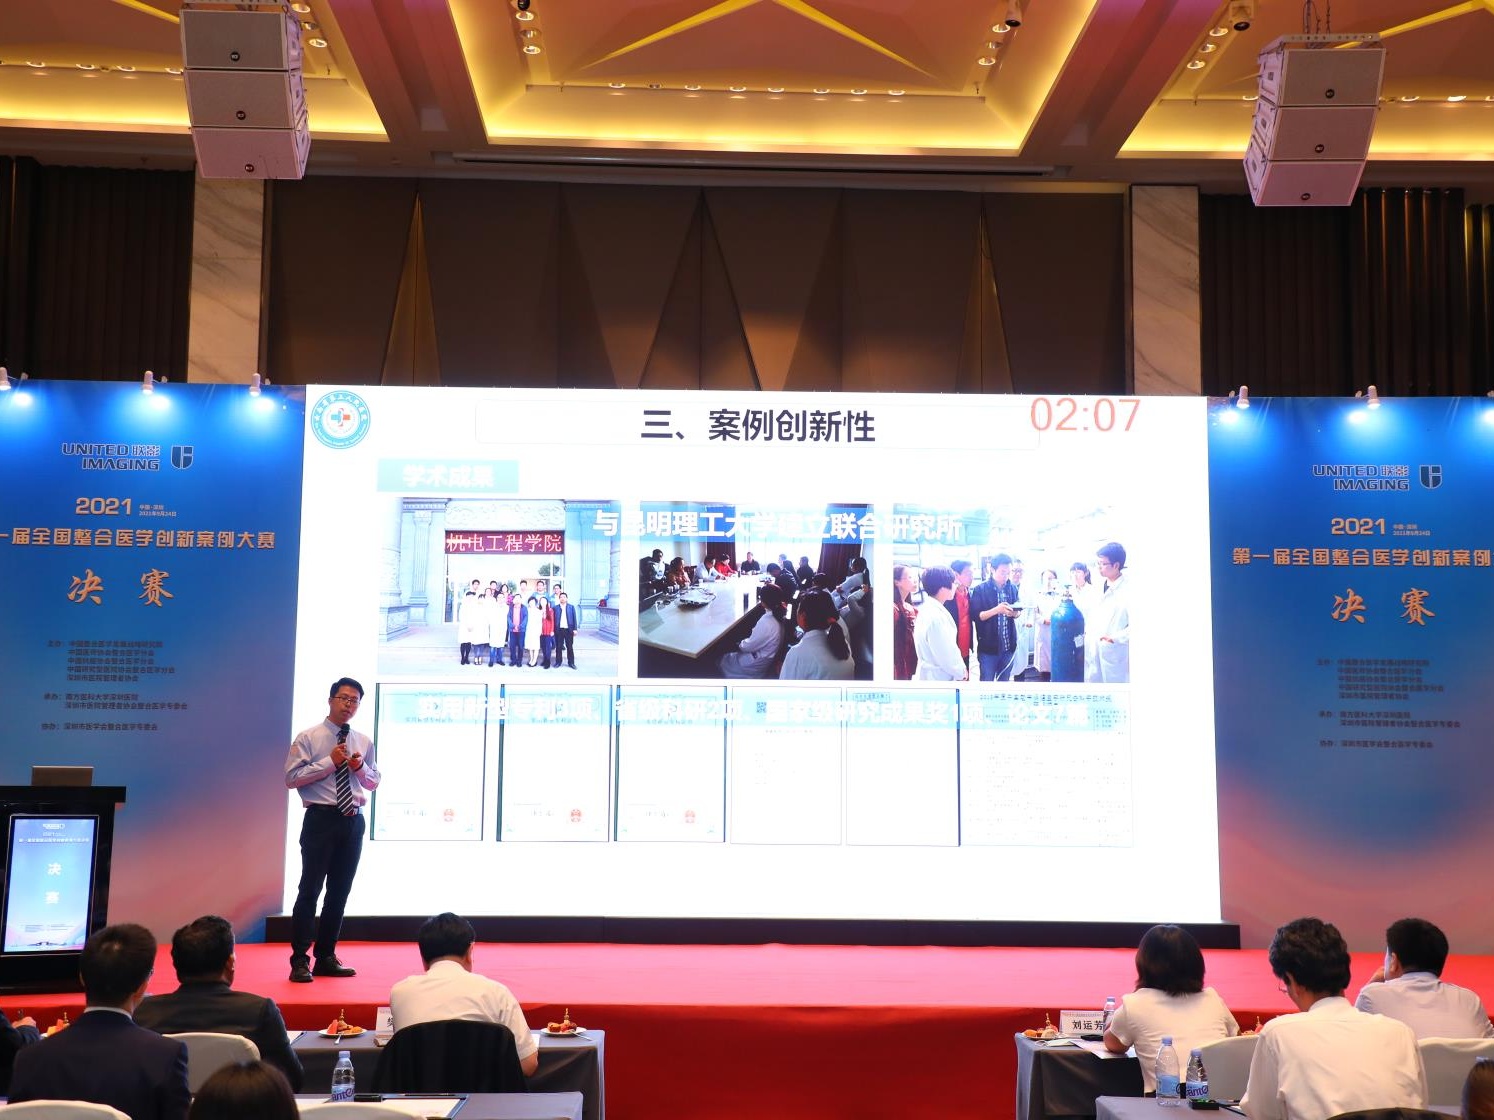 整合医学“脑洞大开”!第一届全国整合医学案例大赛决赛在深圳举行